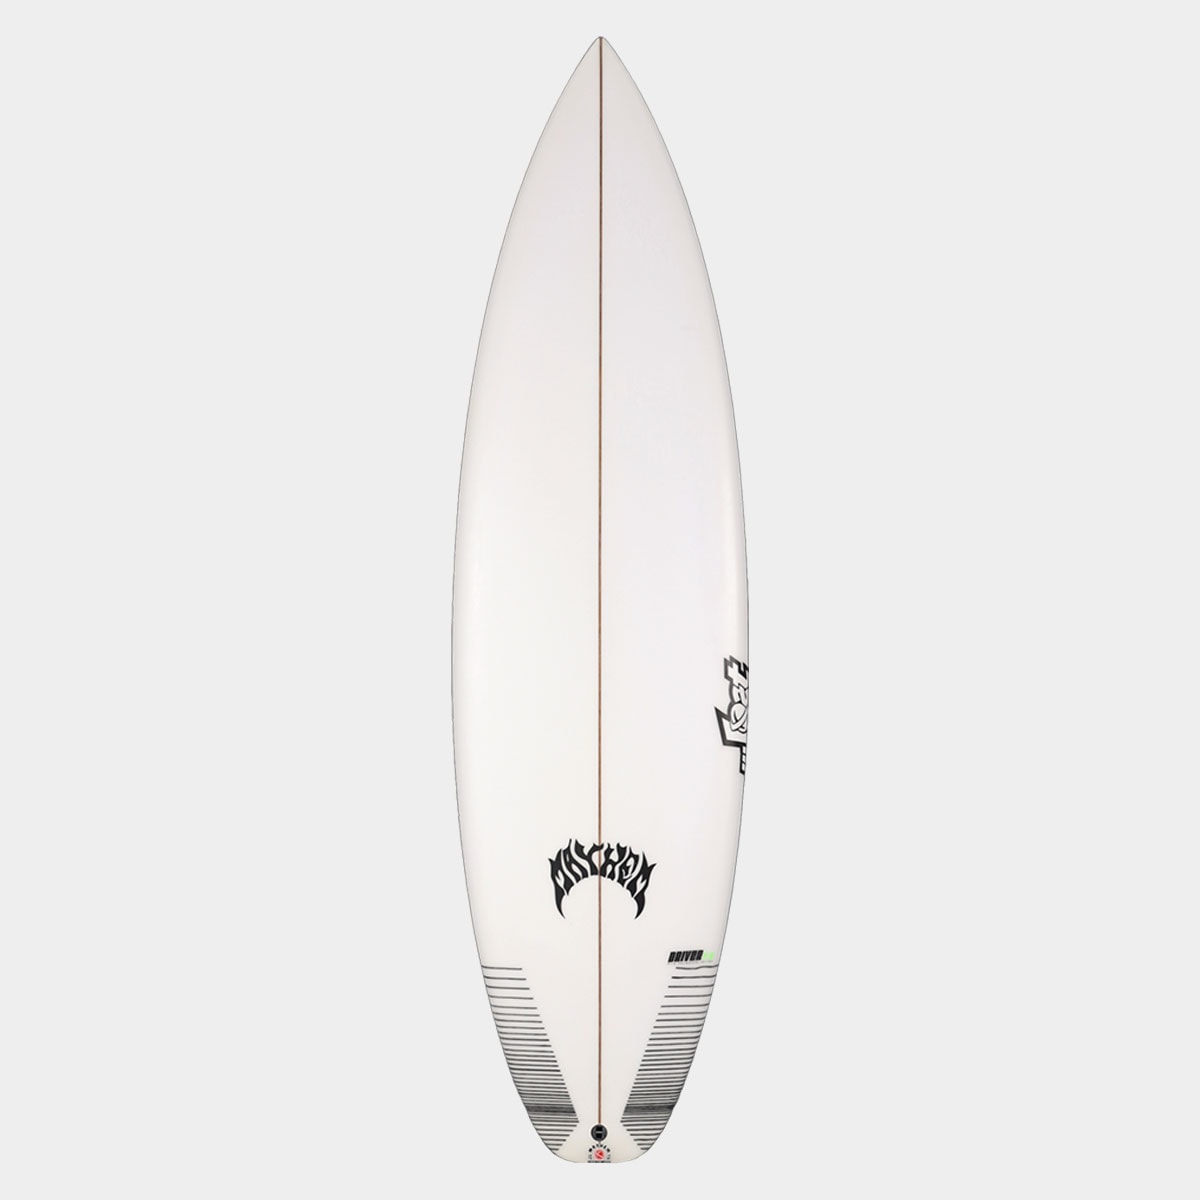 SurfBoardNet / ブランド:LOST SURFBOARDS モデル:DRIVER2.0